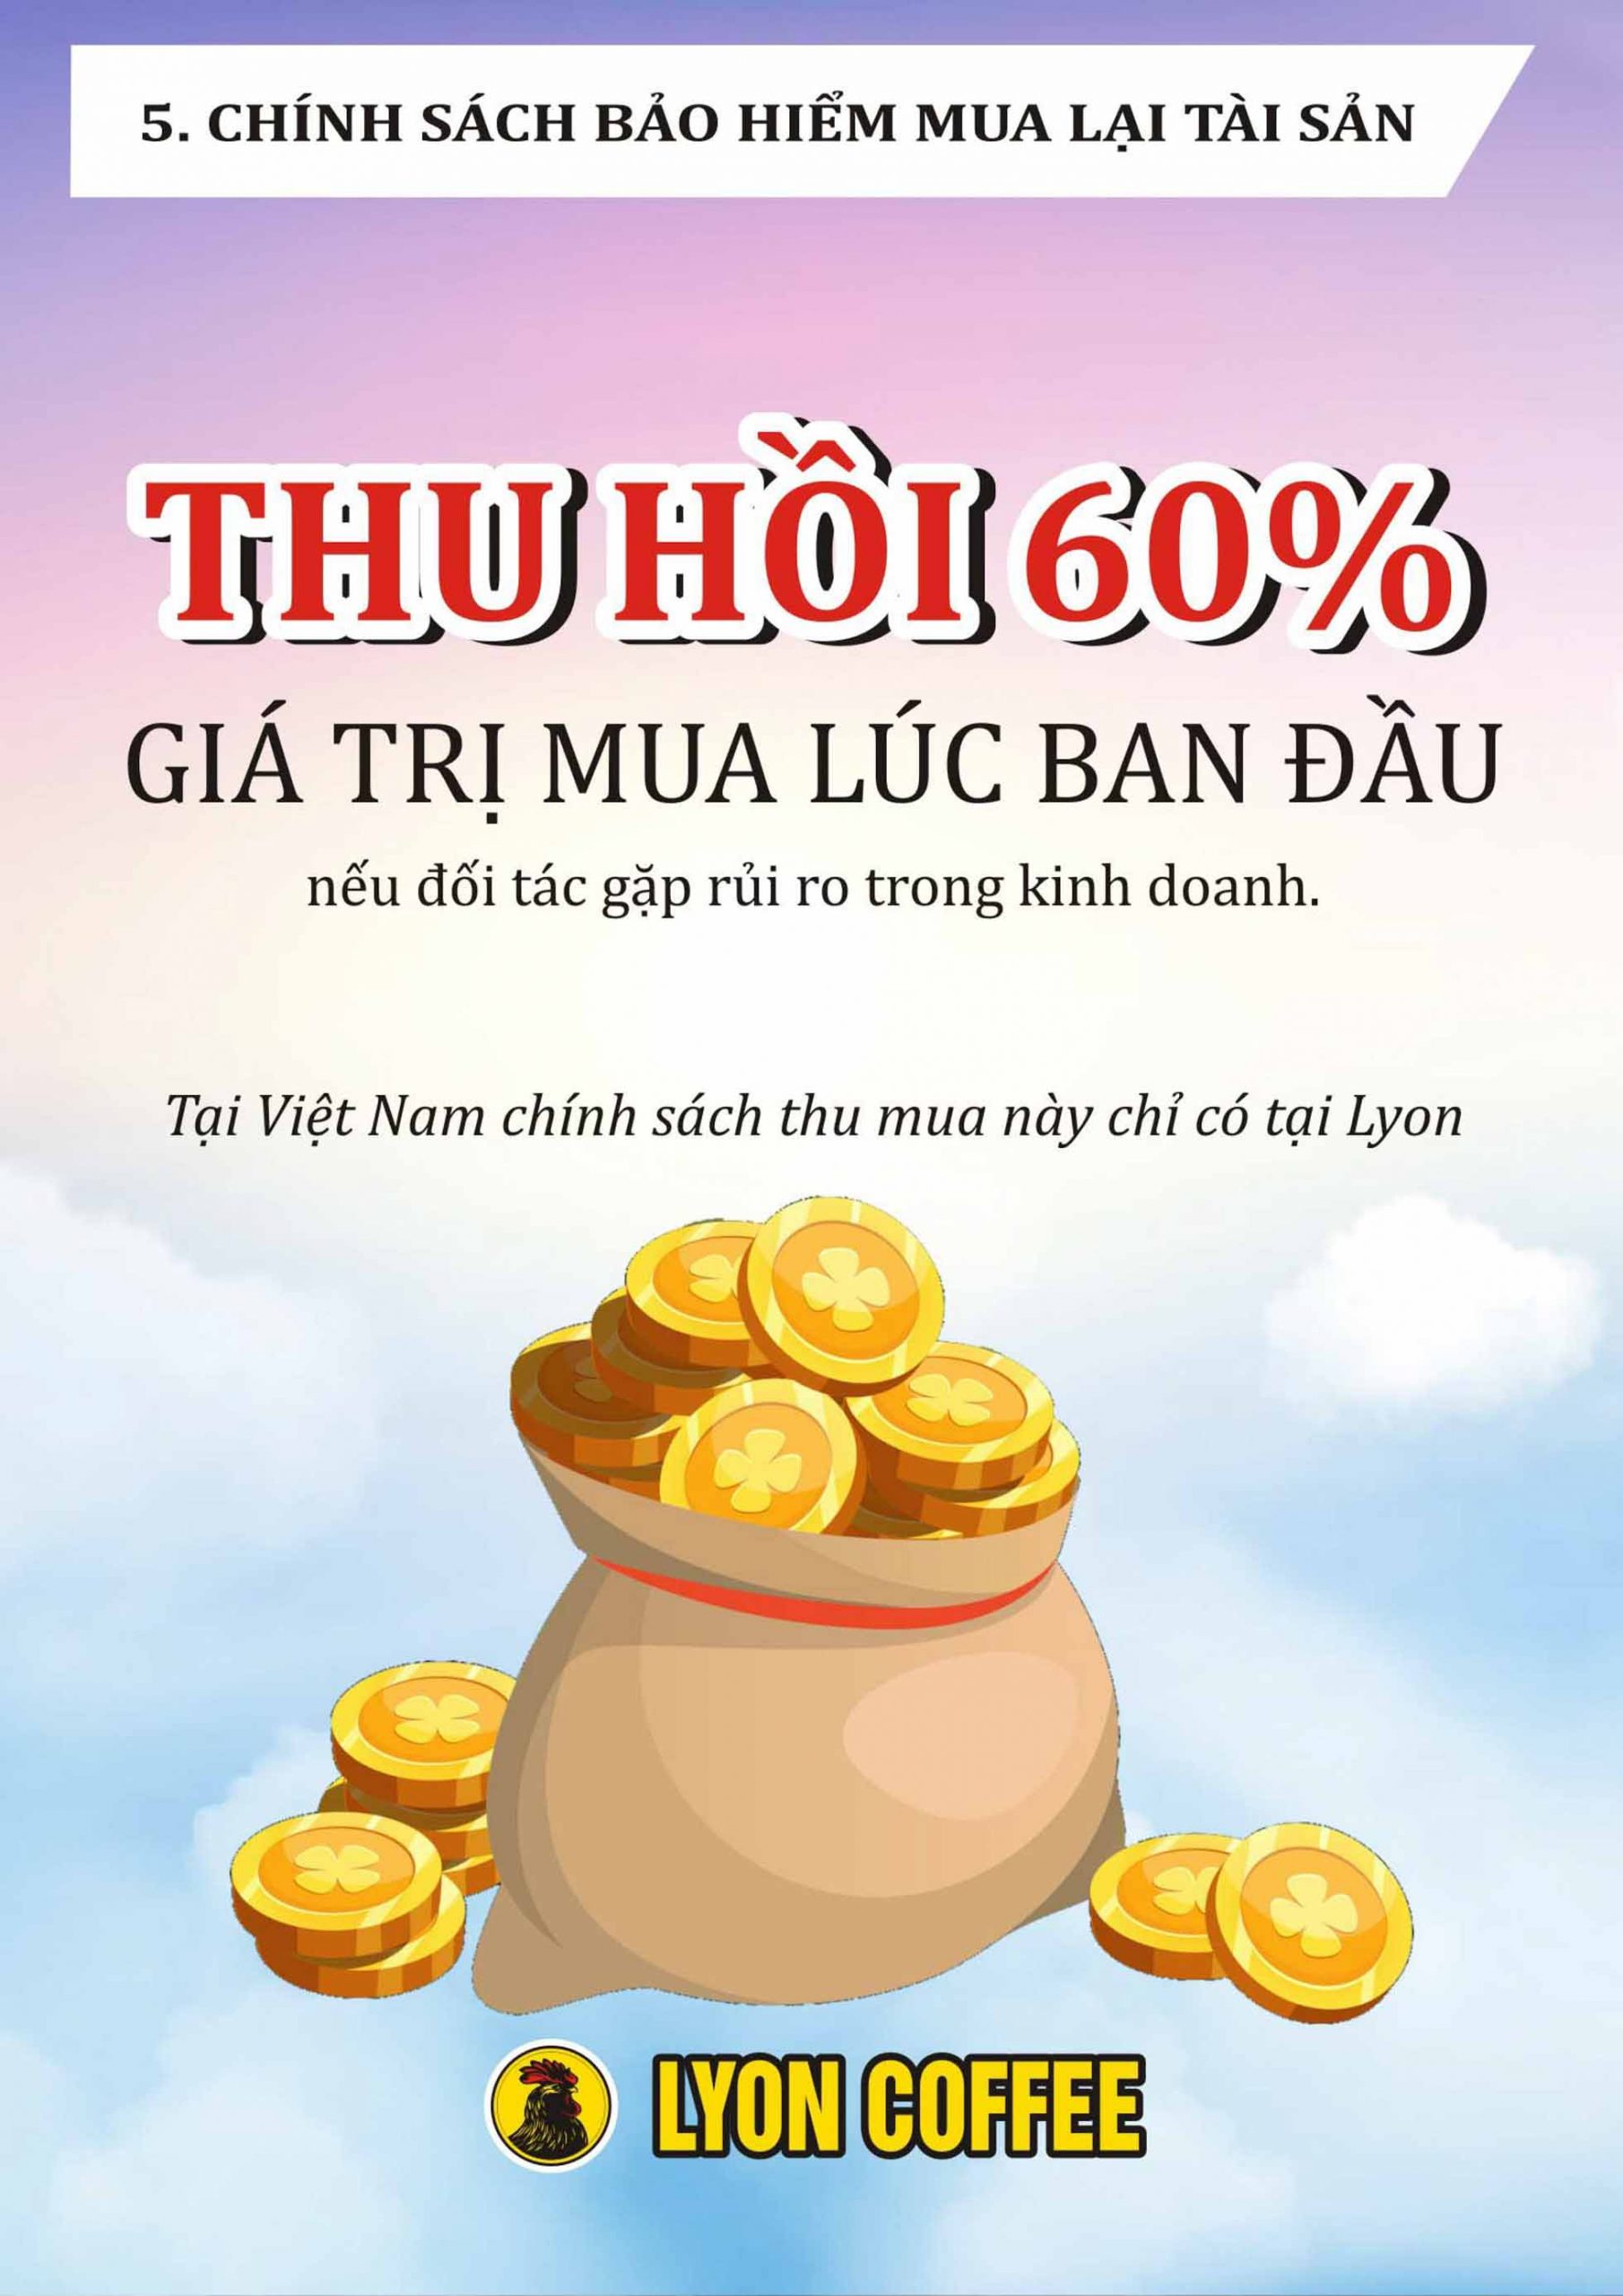 Tại Việt Nam, chính sách thu mua này chỉ có tại Lyon Coffee